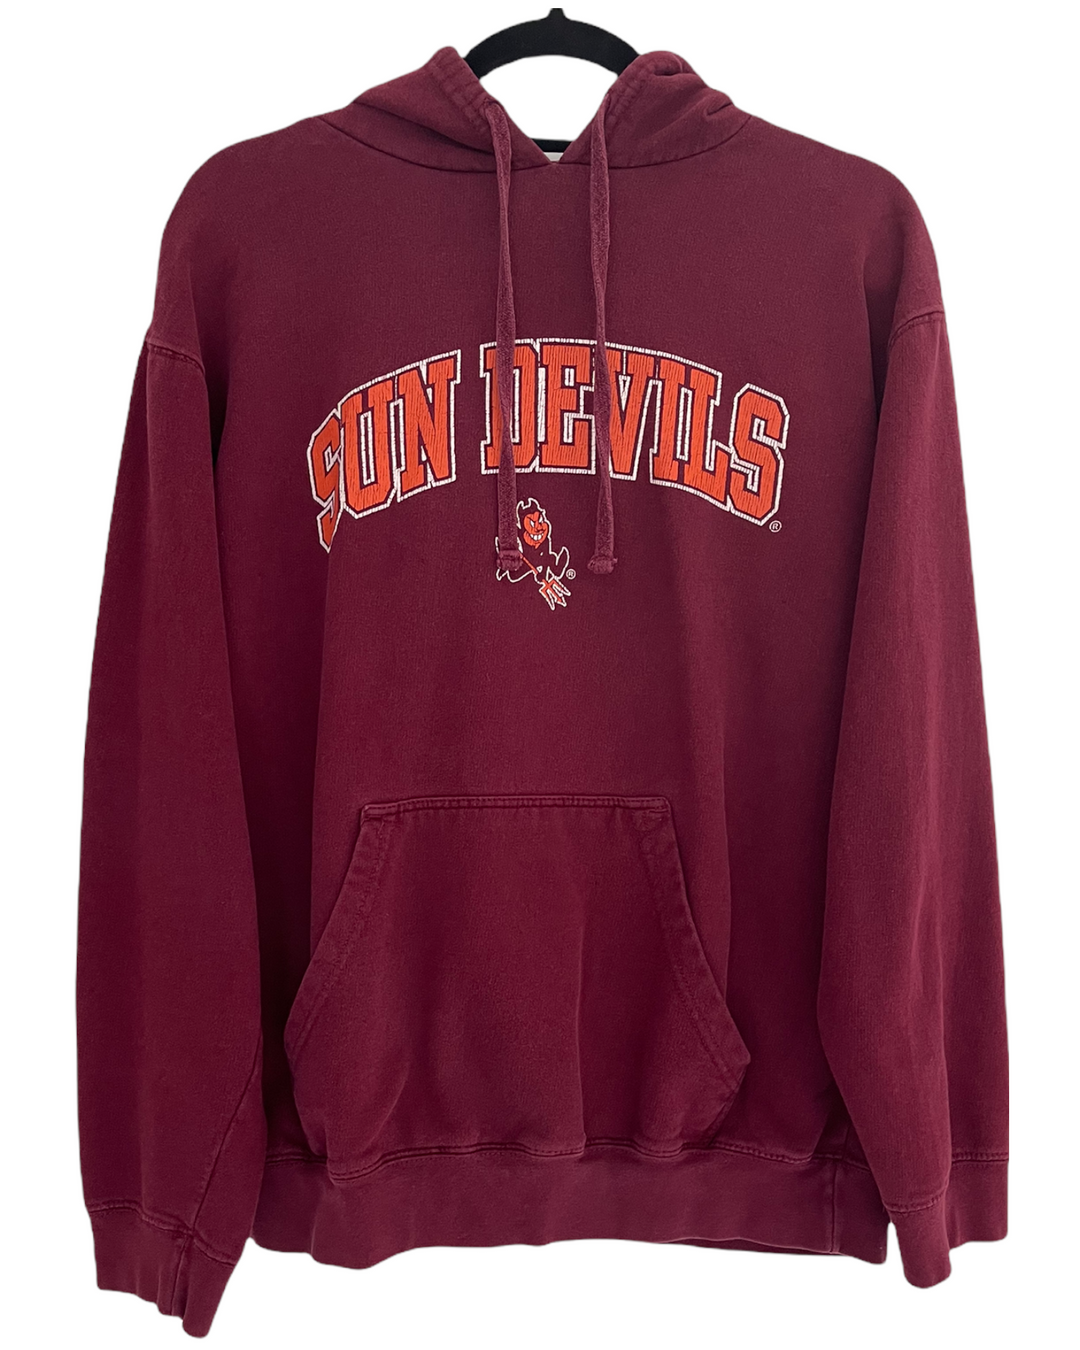 ASU Sun Devils Vintage Sweatshirt